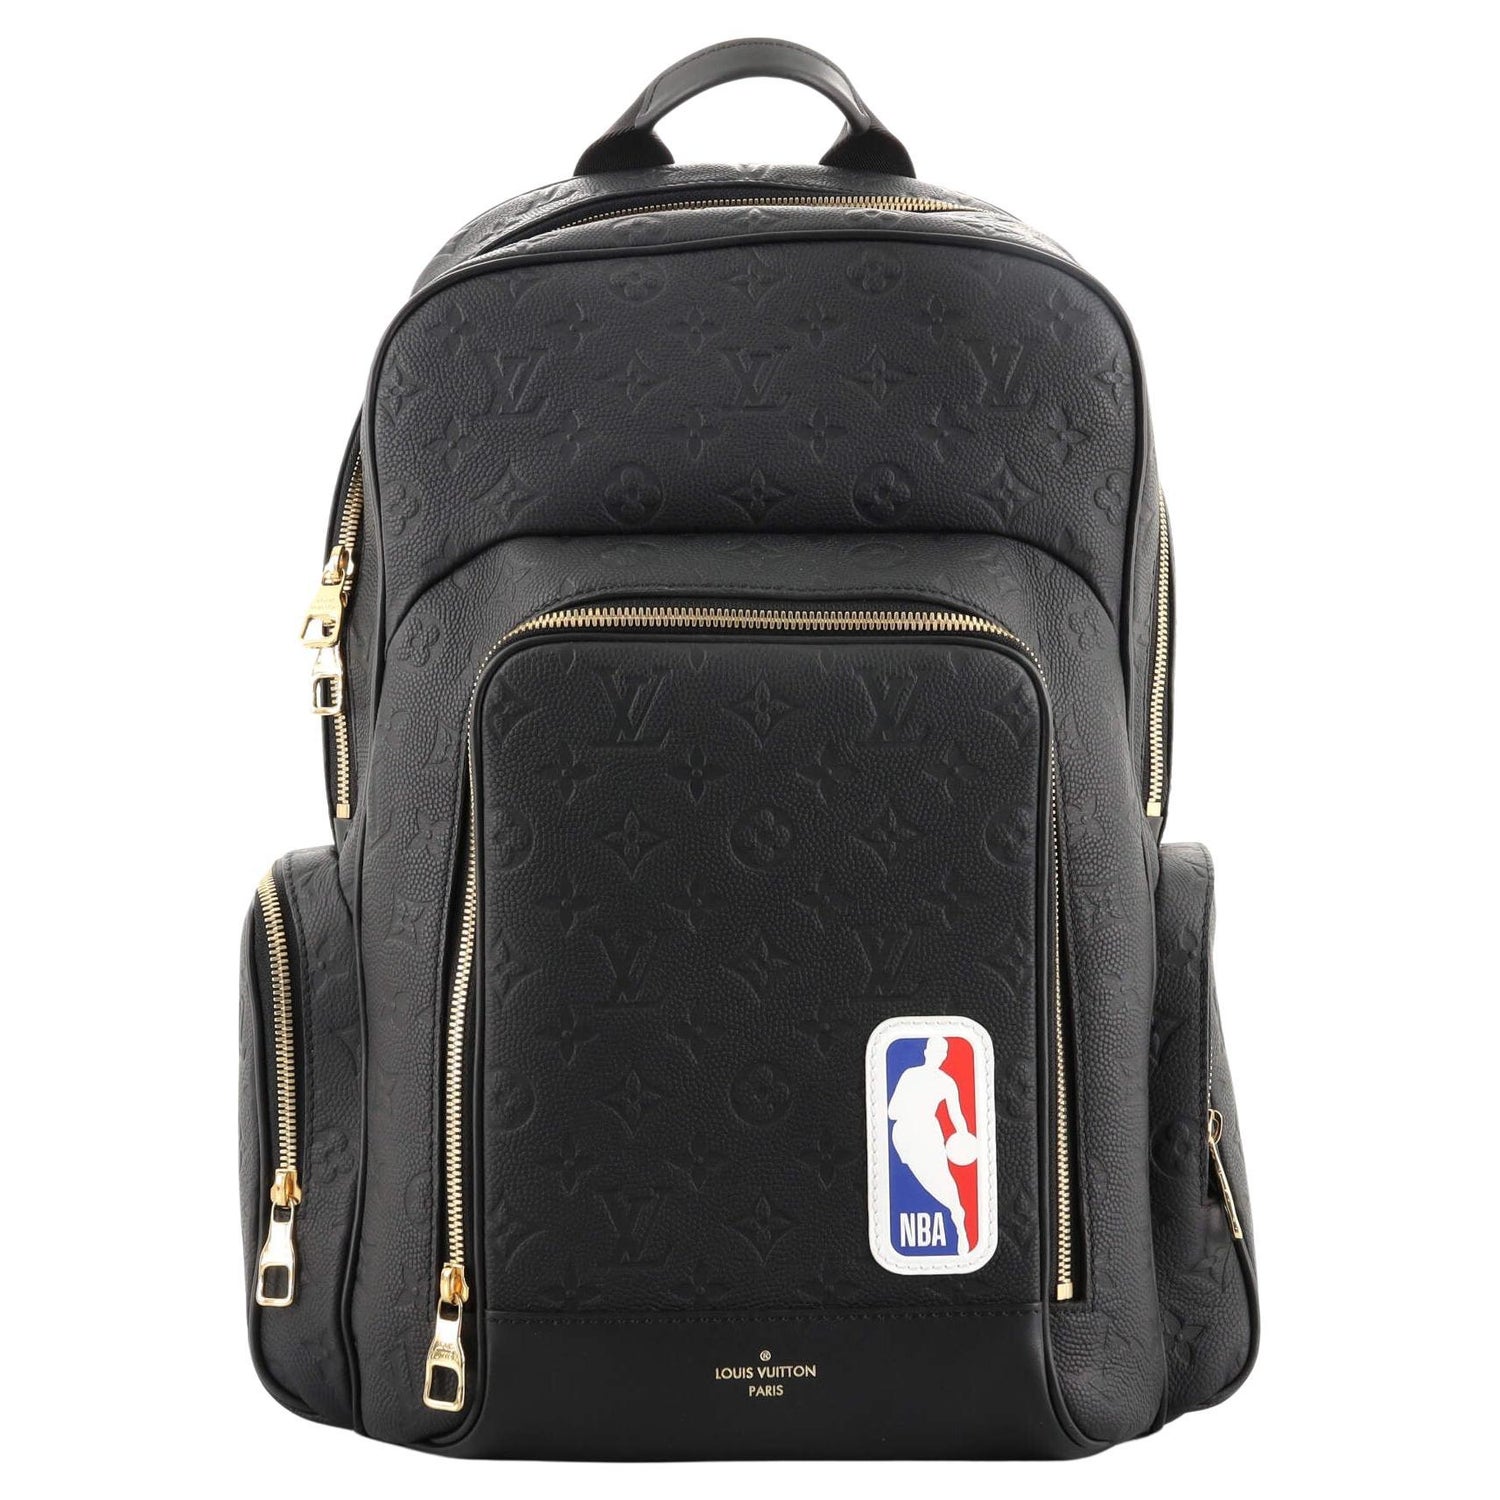 Ebene Monogram Coated Canvas NBA New Backpack Gold Hardware, 2020